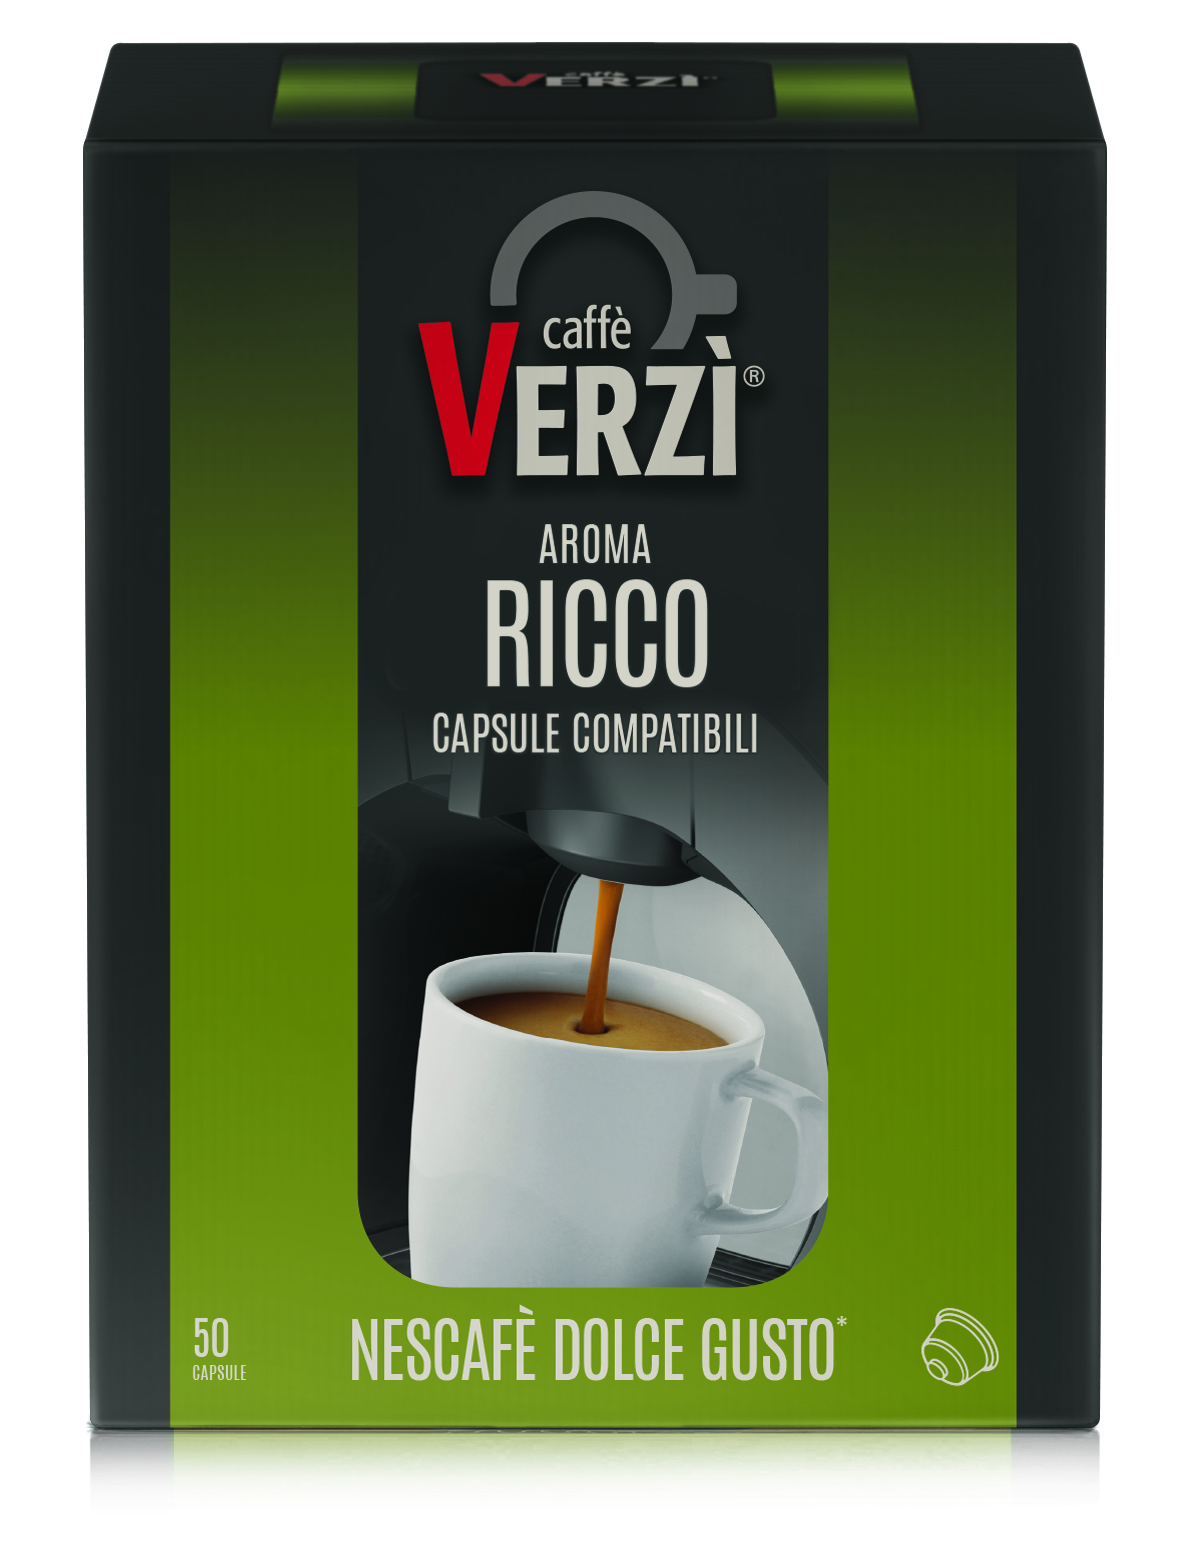 Capsule Compatibili Nescafè Dolce Gusto - Aroma Ricco - Verzì Caffè